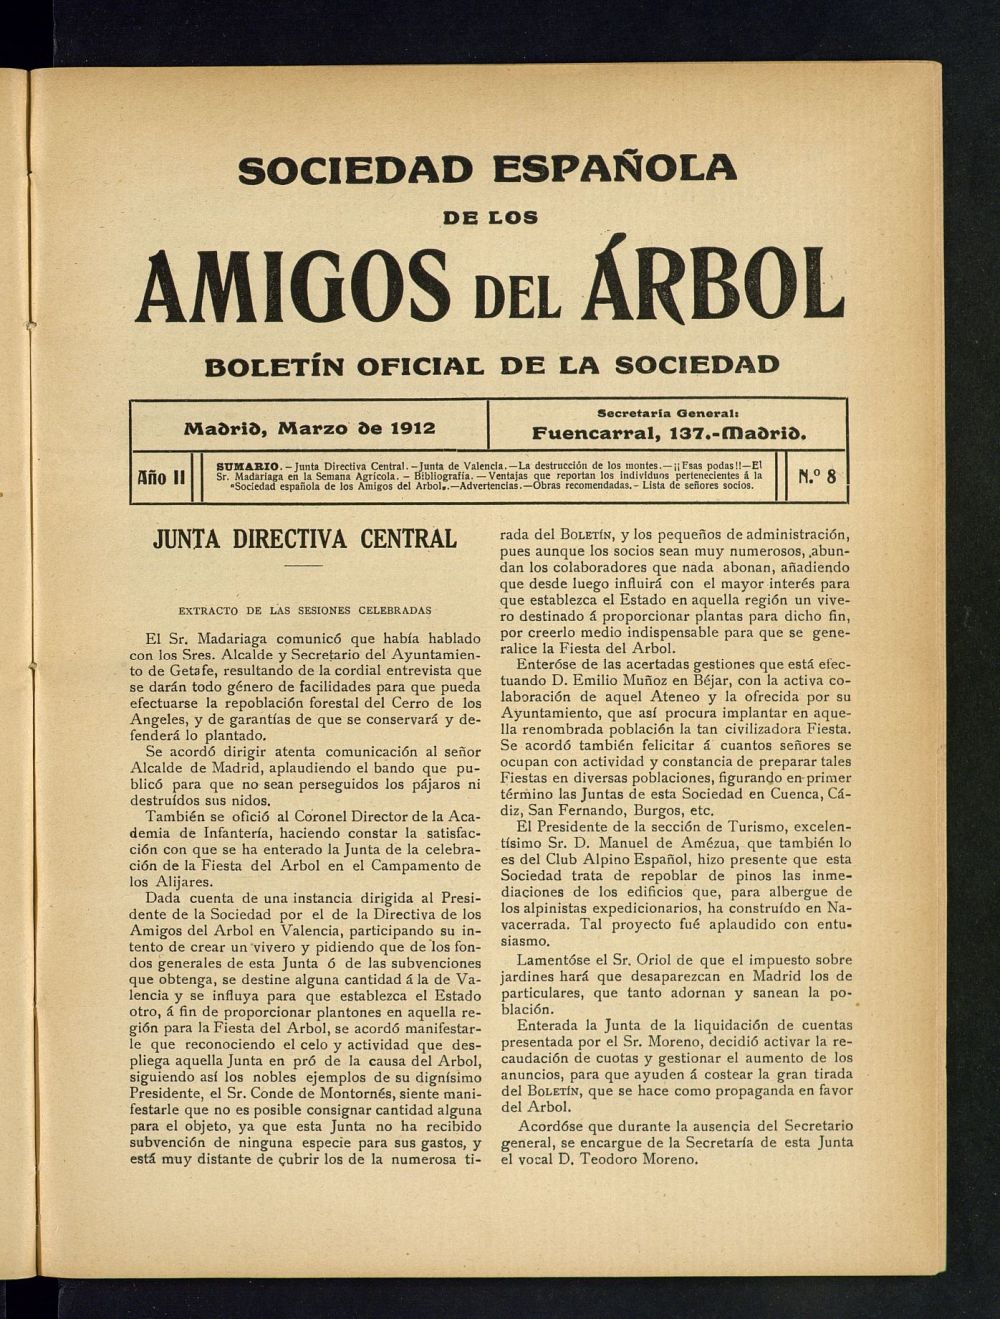 Boletn Comisin organizadora de la Sociedad Espaola de los amigos del rbol de marzo de 1912